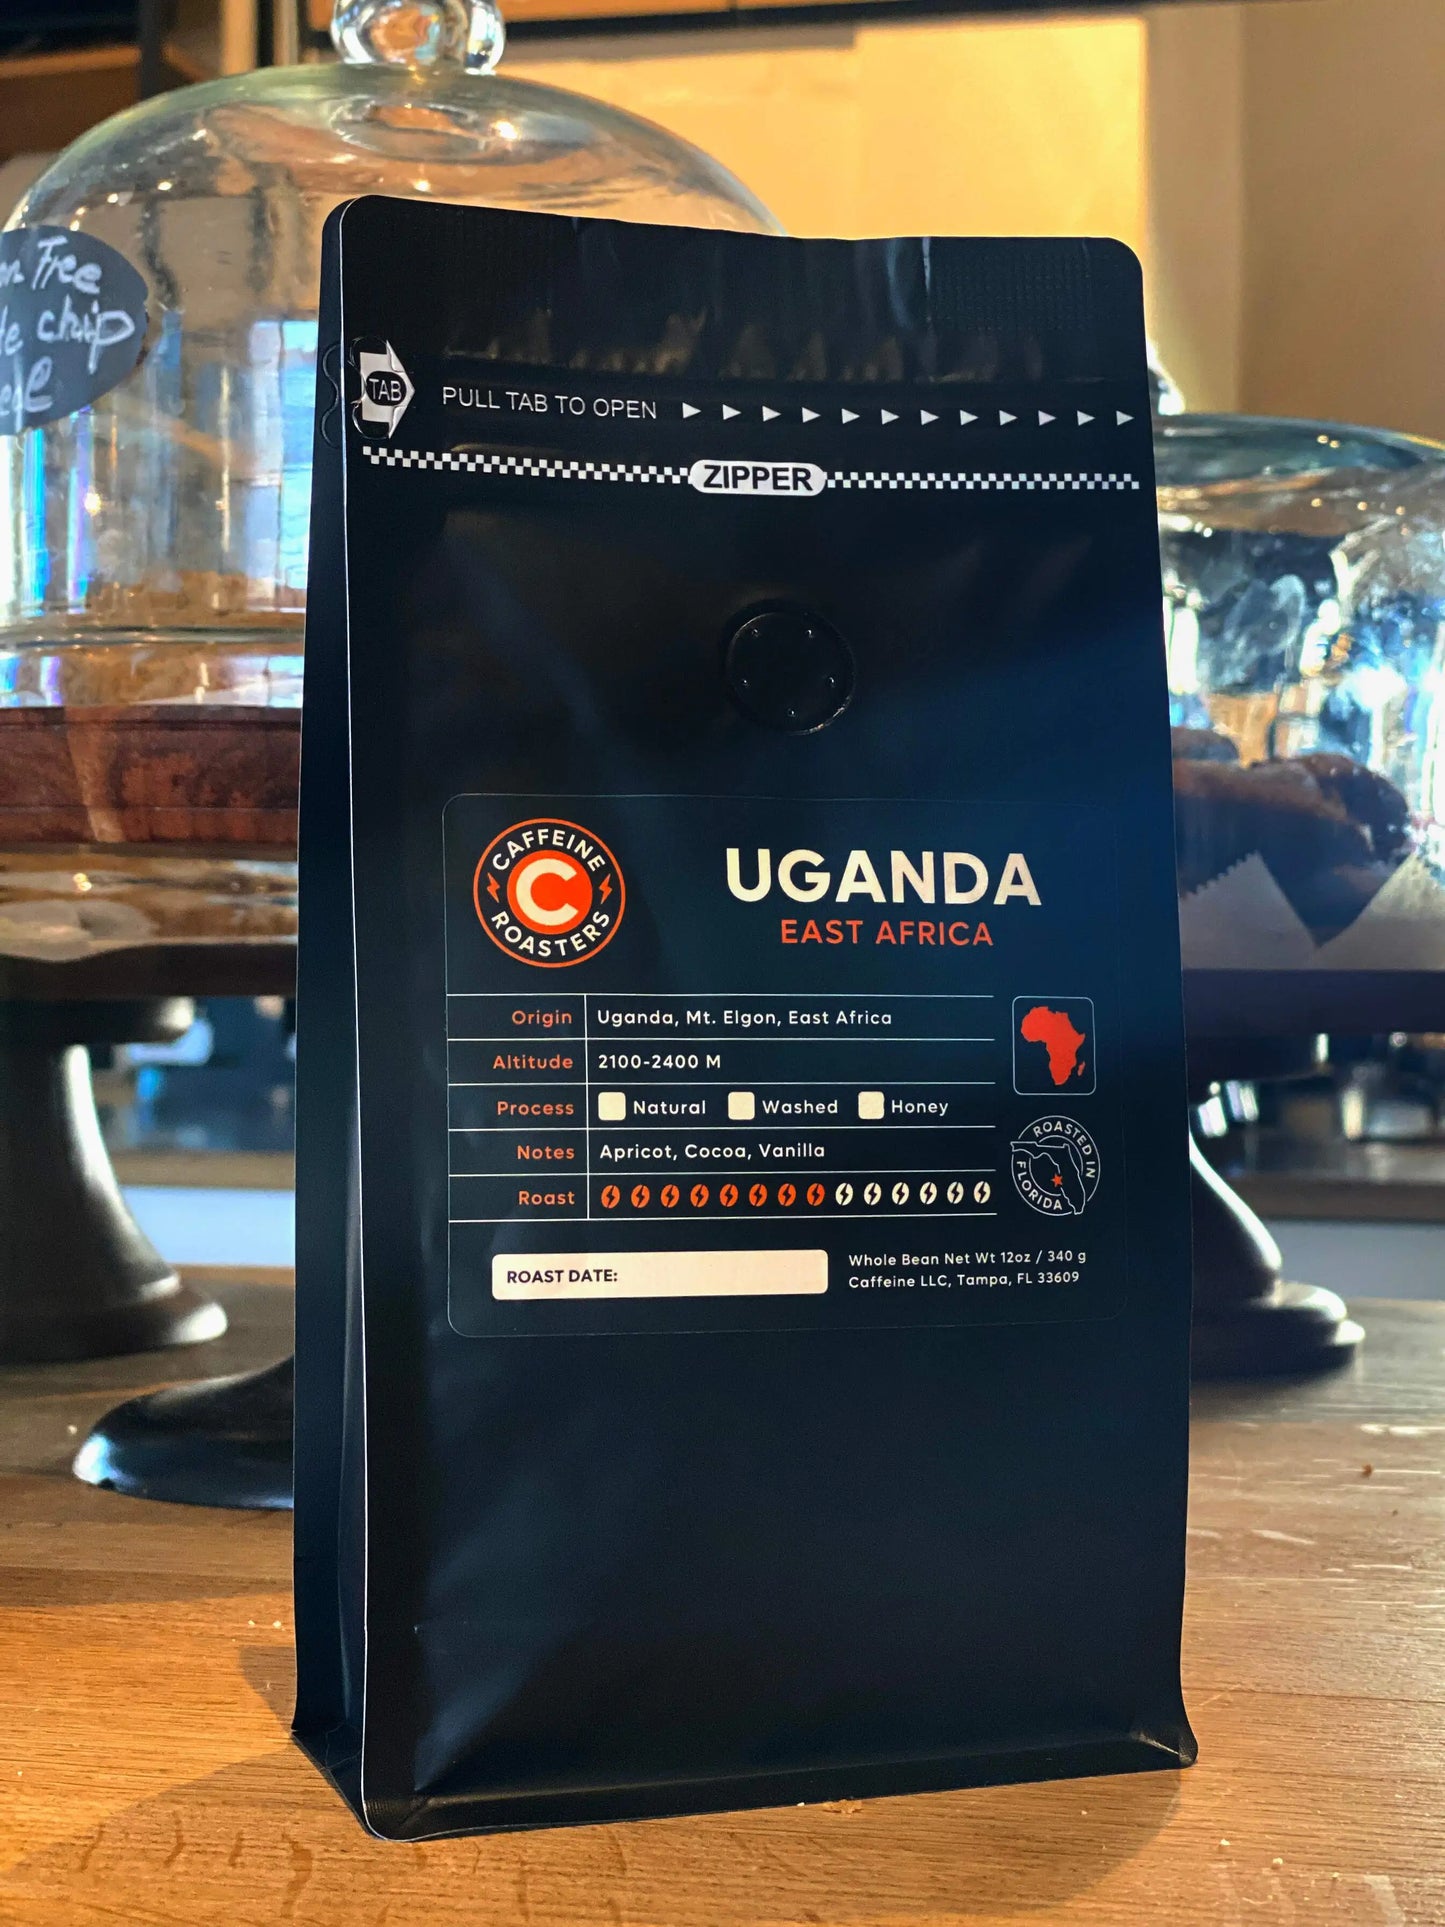 Uganda, Medium Roast Coffee